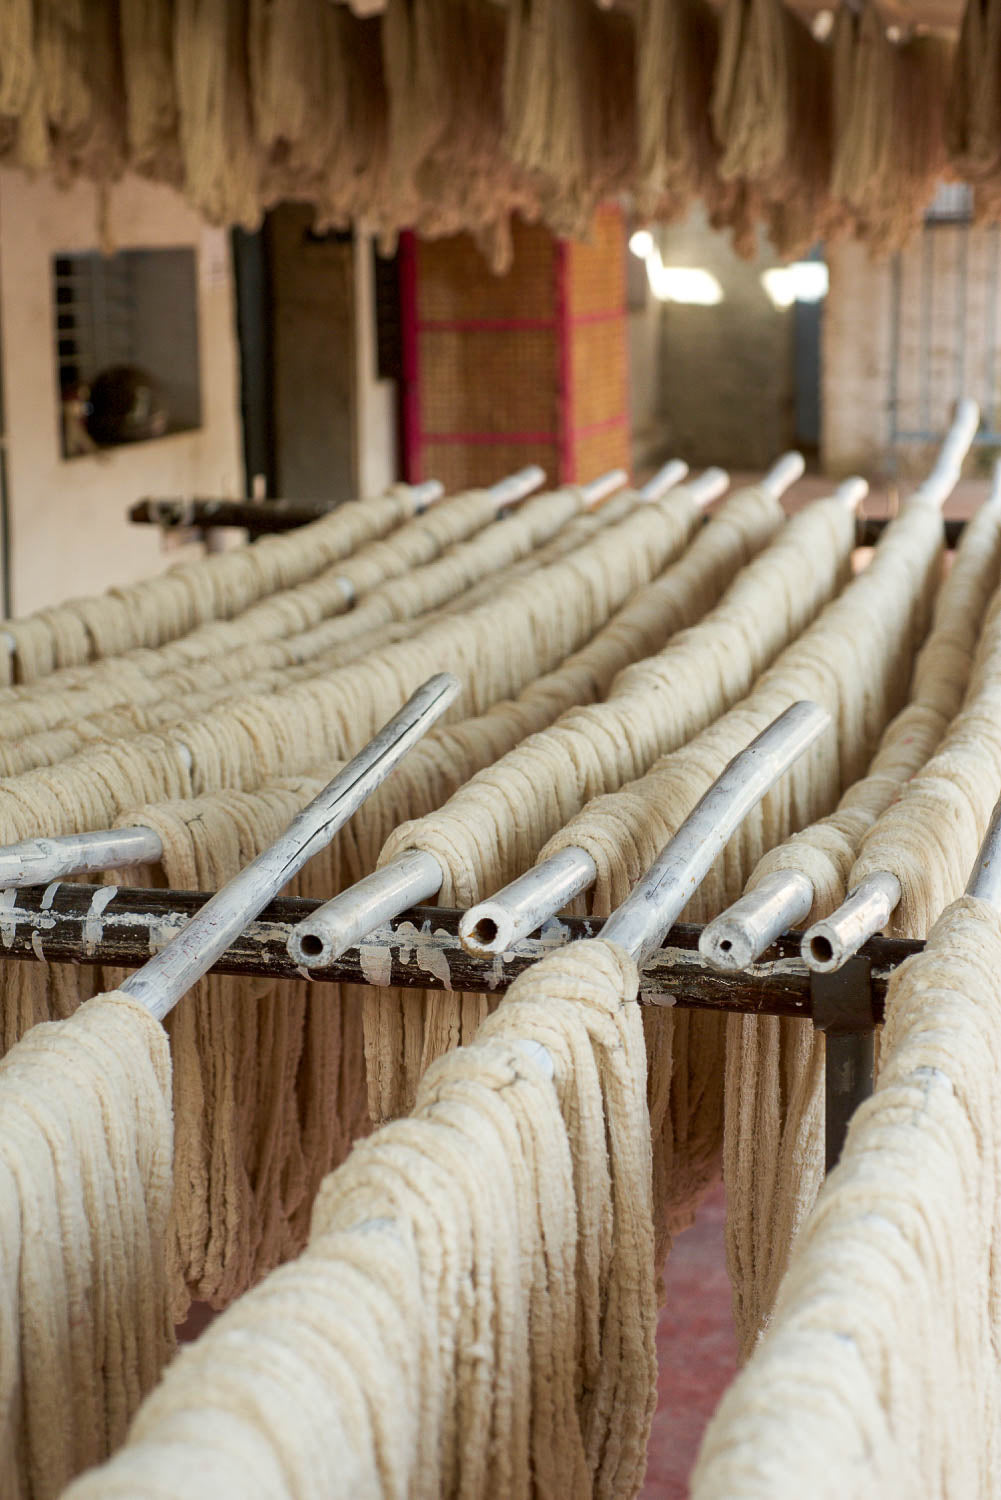 ambar charkha spun cotton yarn in wardha, maharashtra